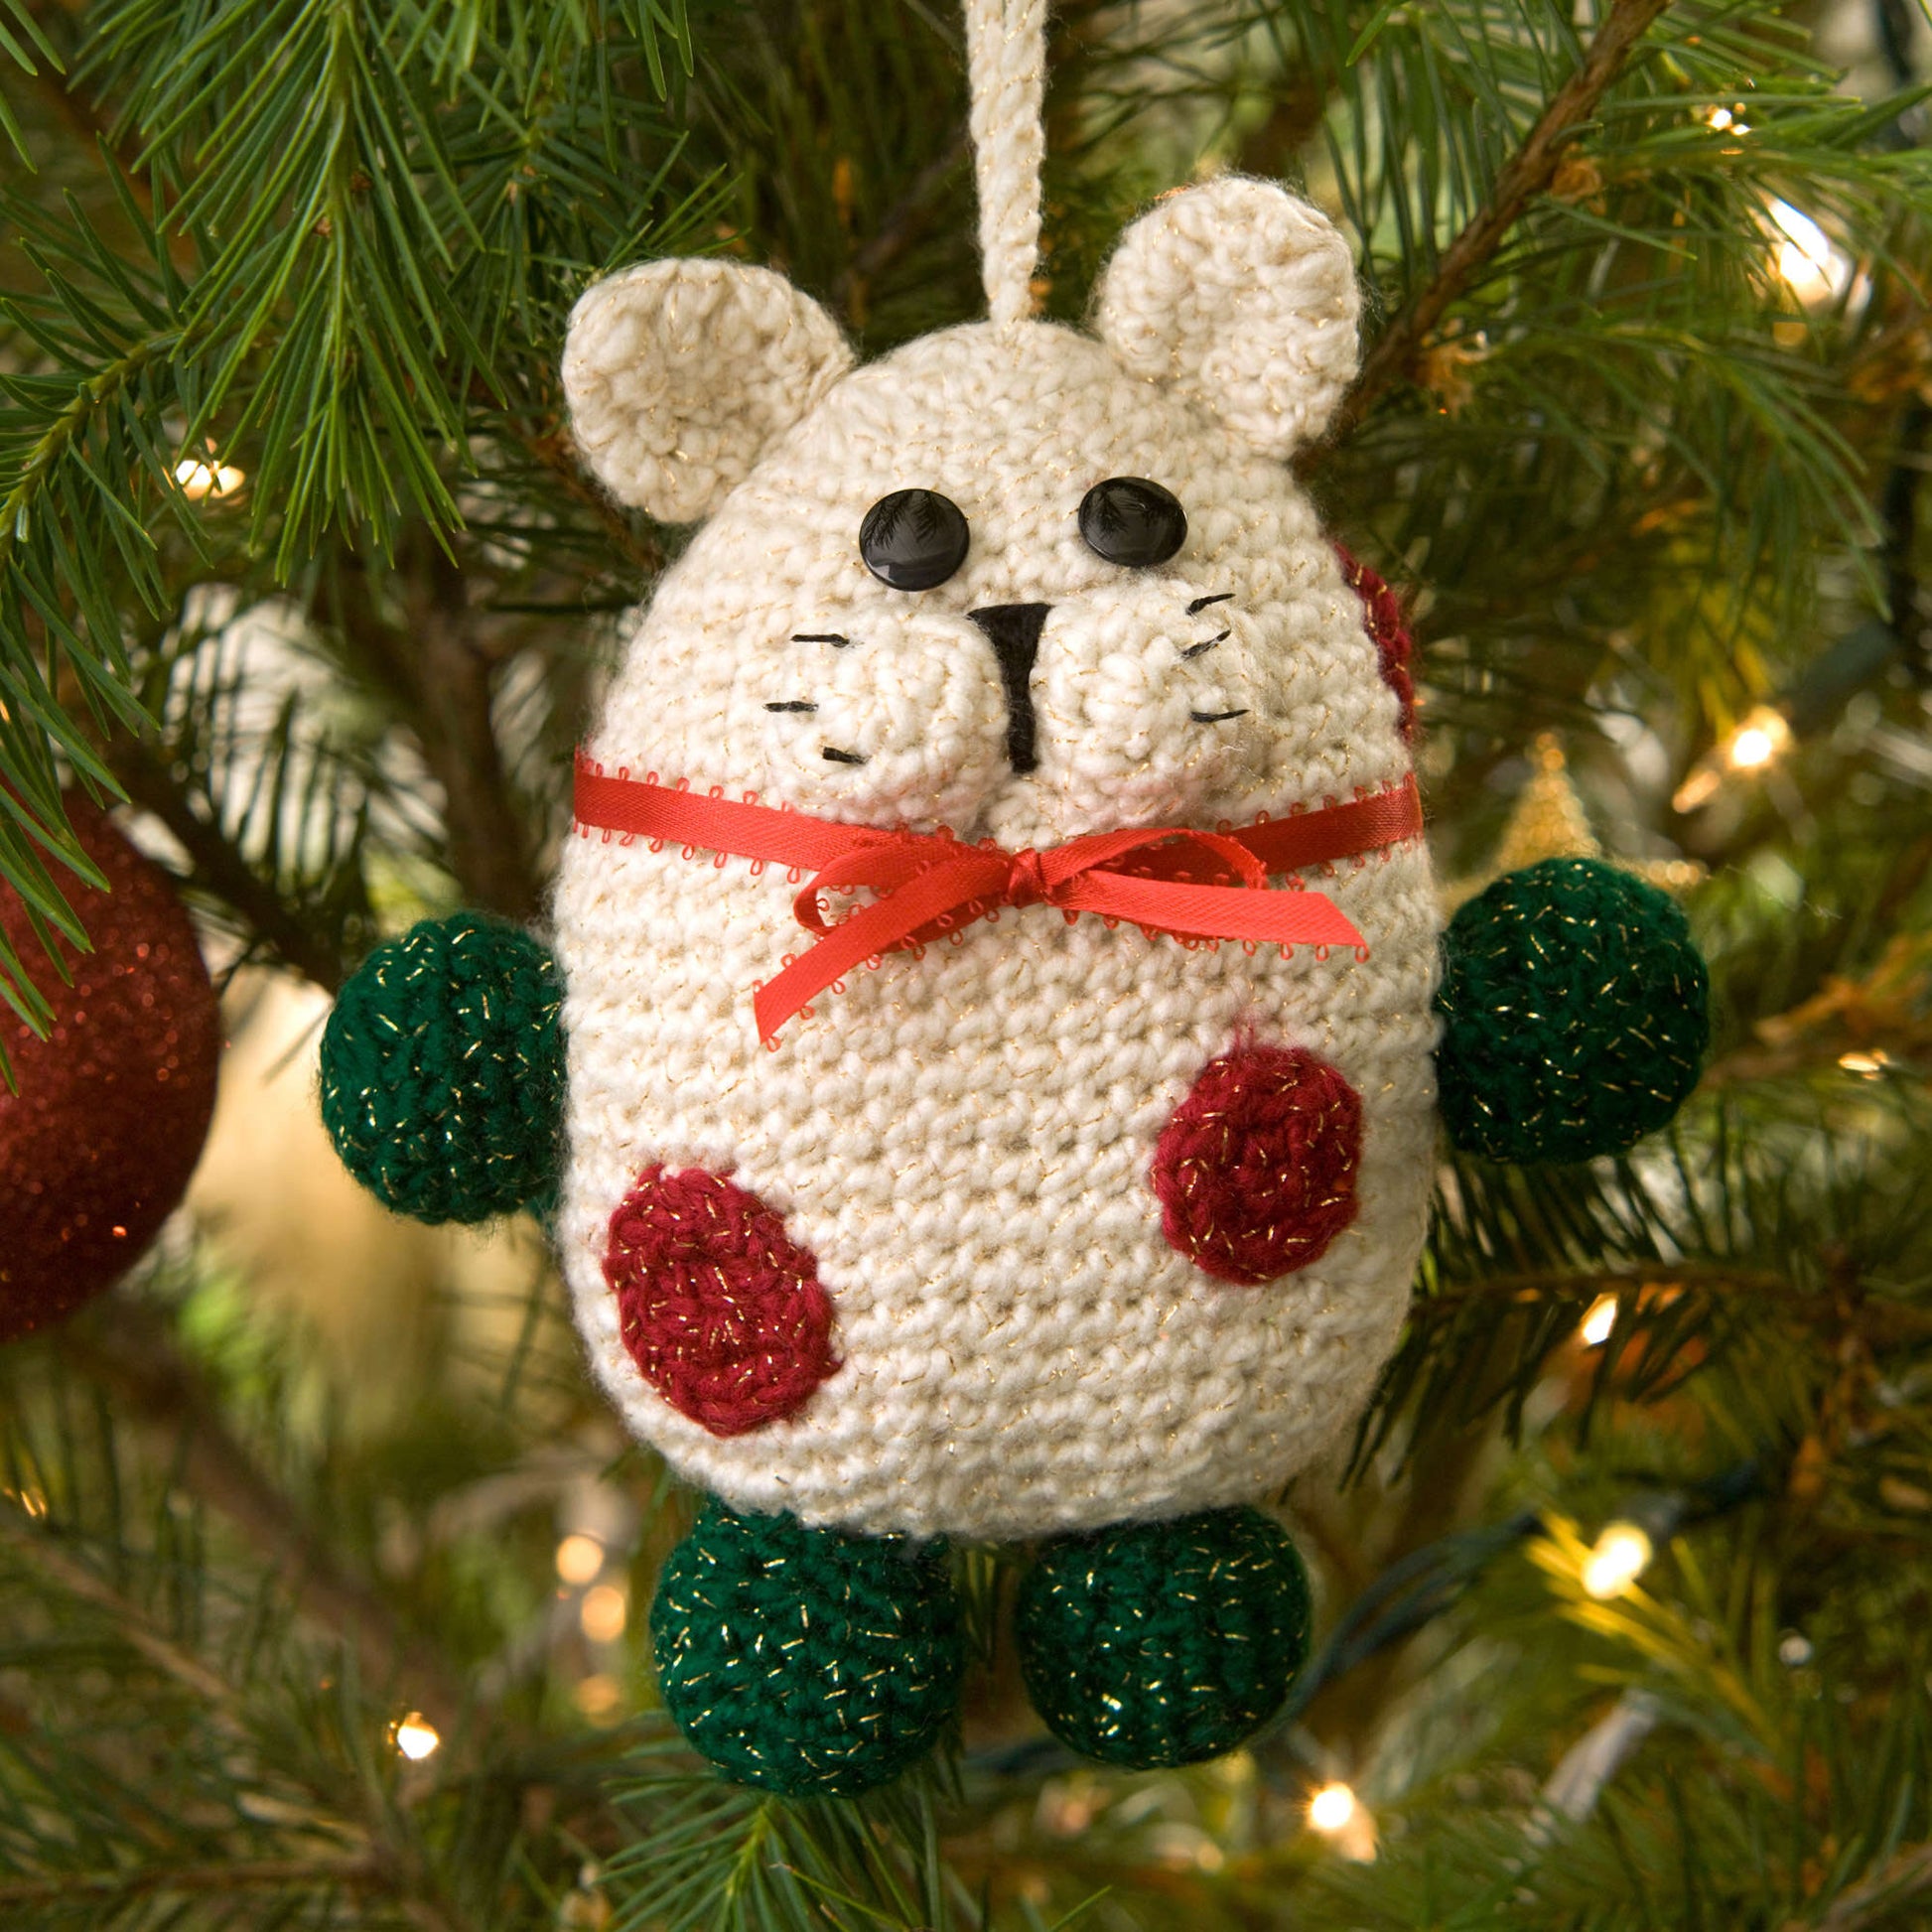 Free Red Heart Crochet Kitty Ornament Pattern